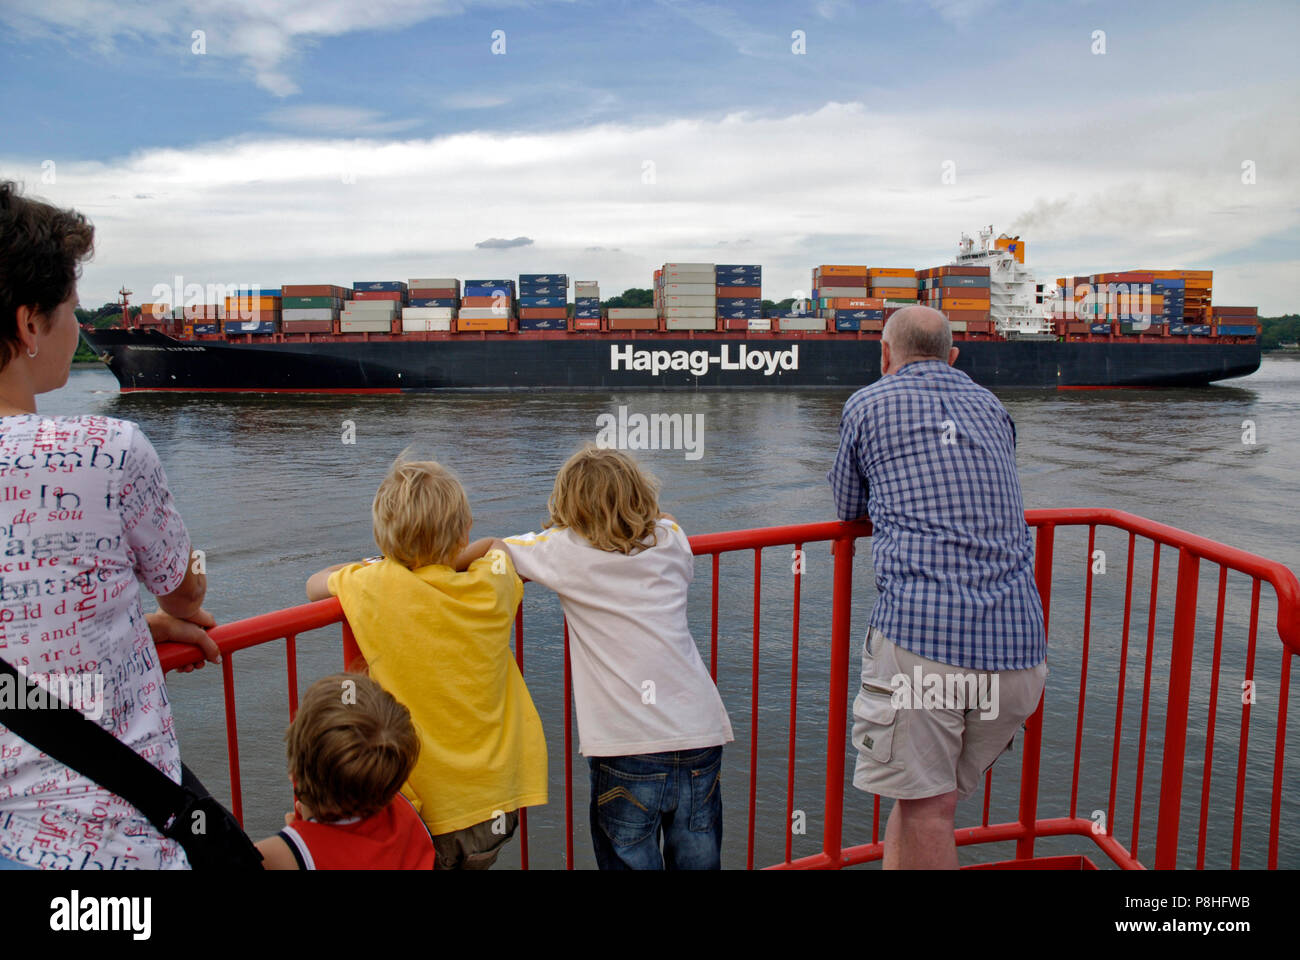 HSV Blumentopf Containerschiff